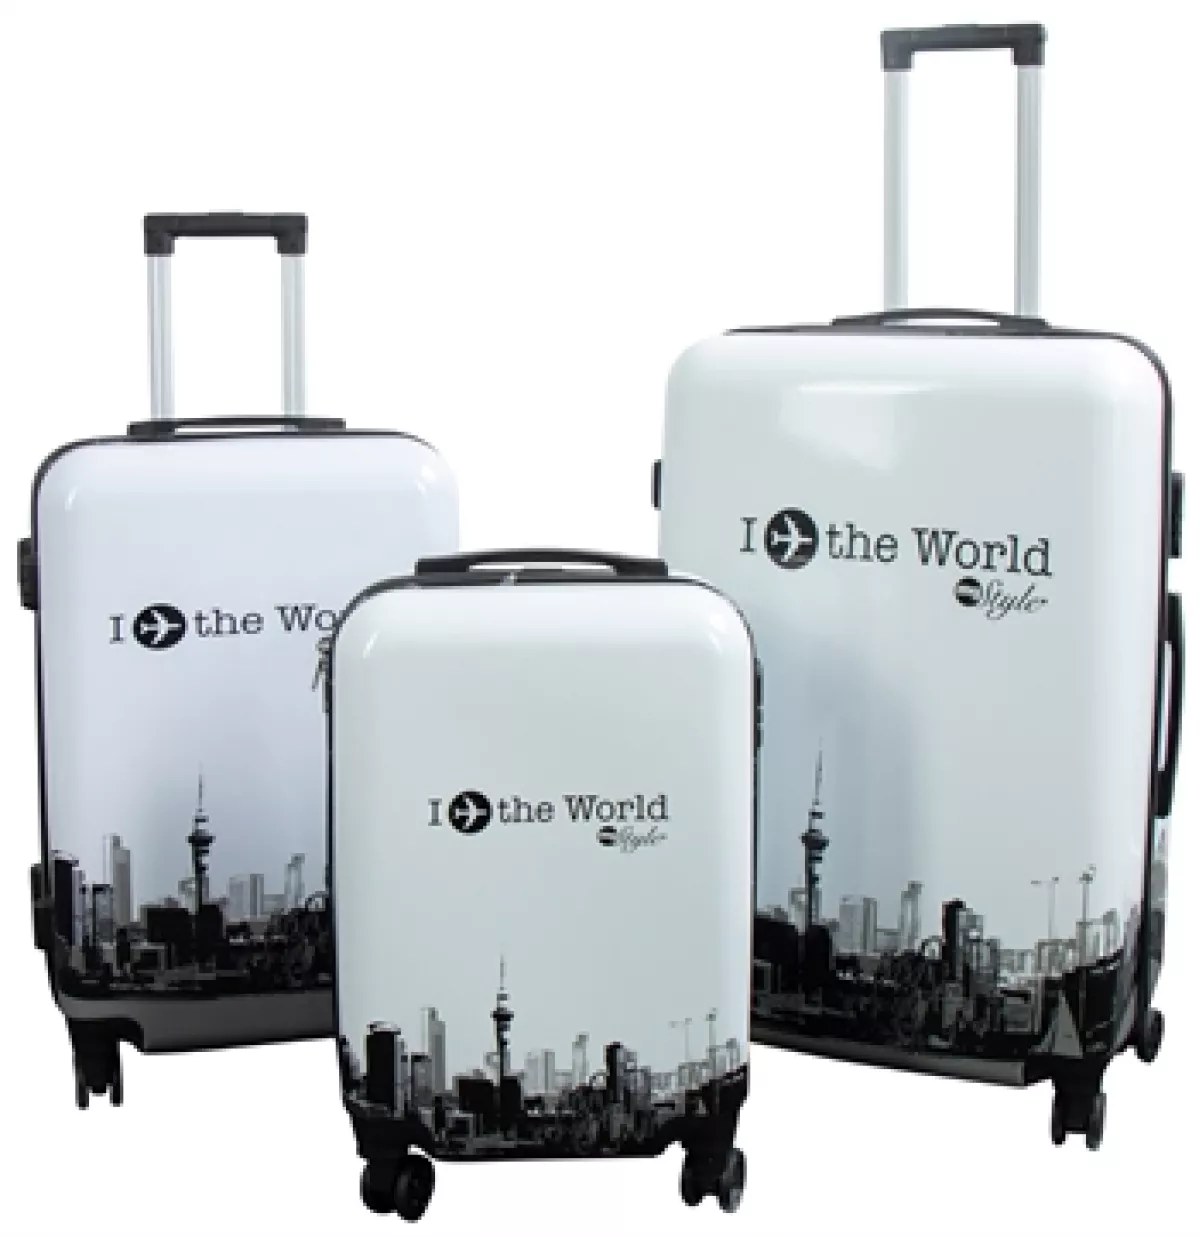 #1 - Kuffertsæt - I Love The World hardcase kuffert - Eksklusiv rejsekuffert